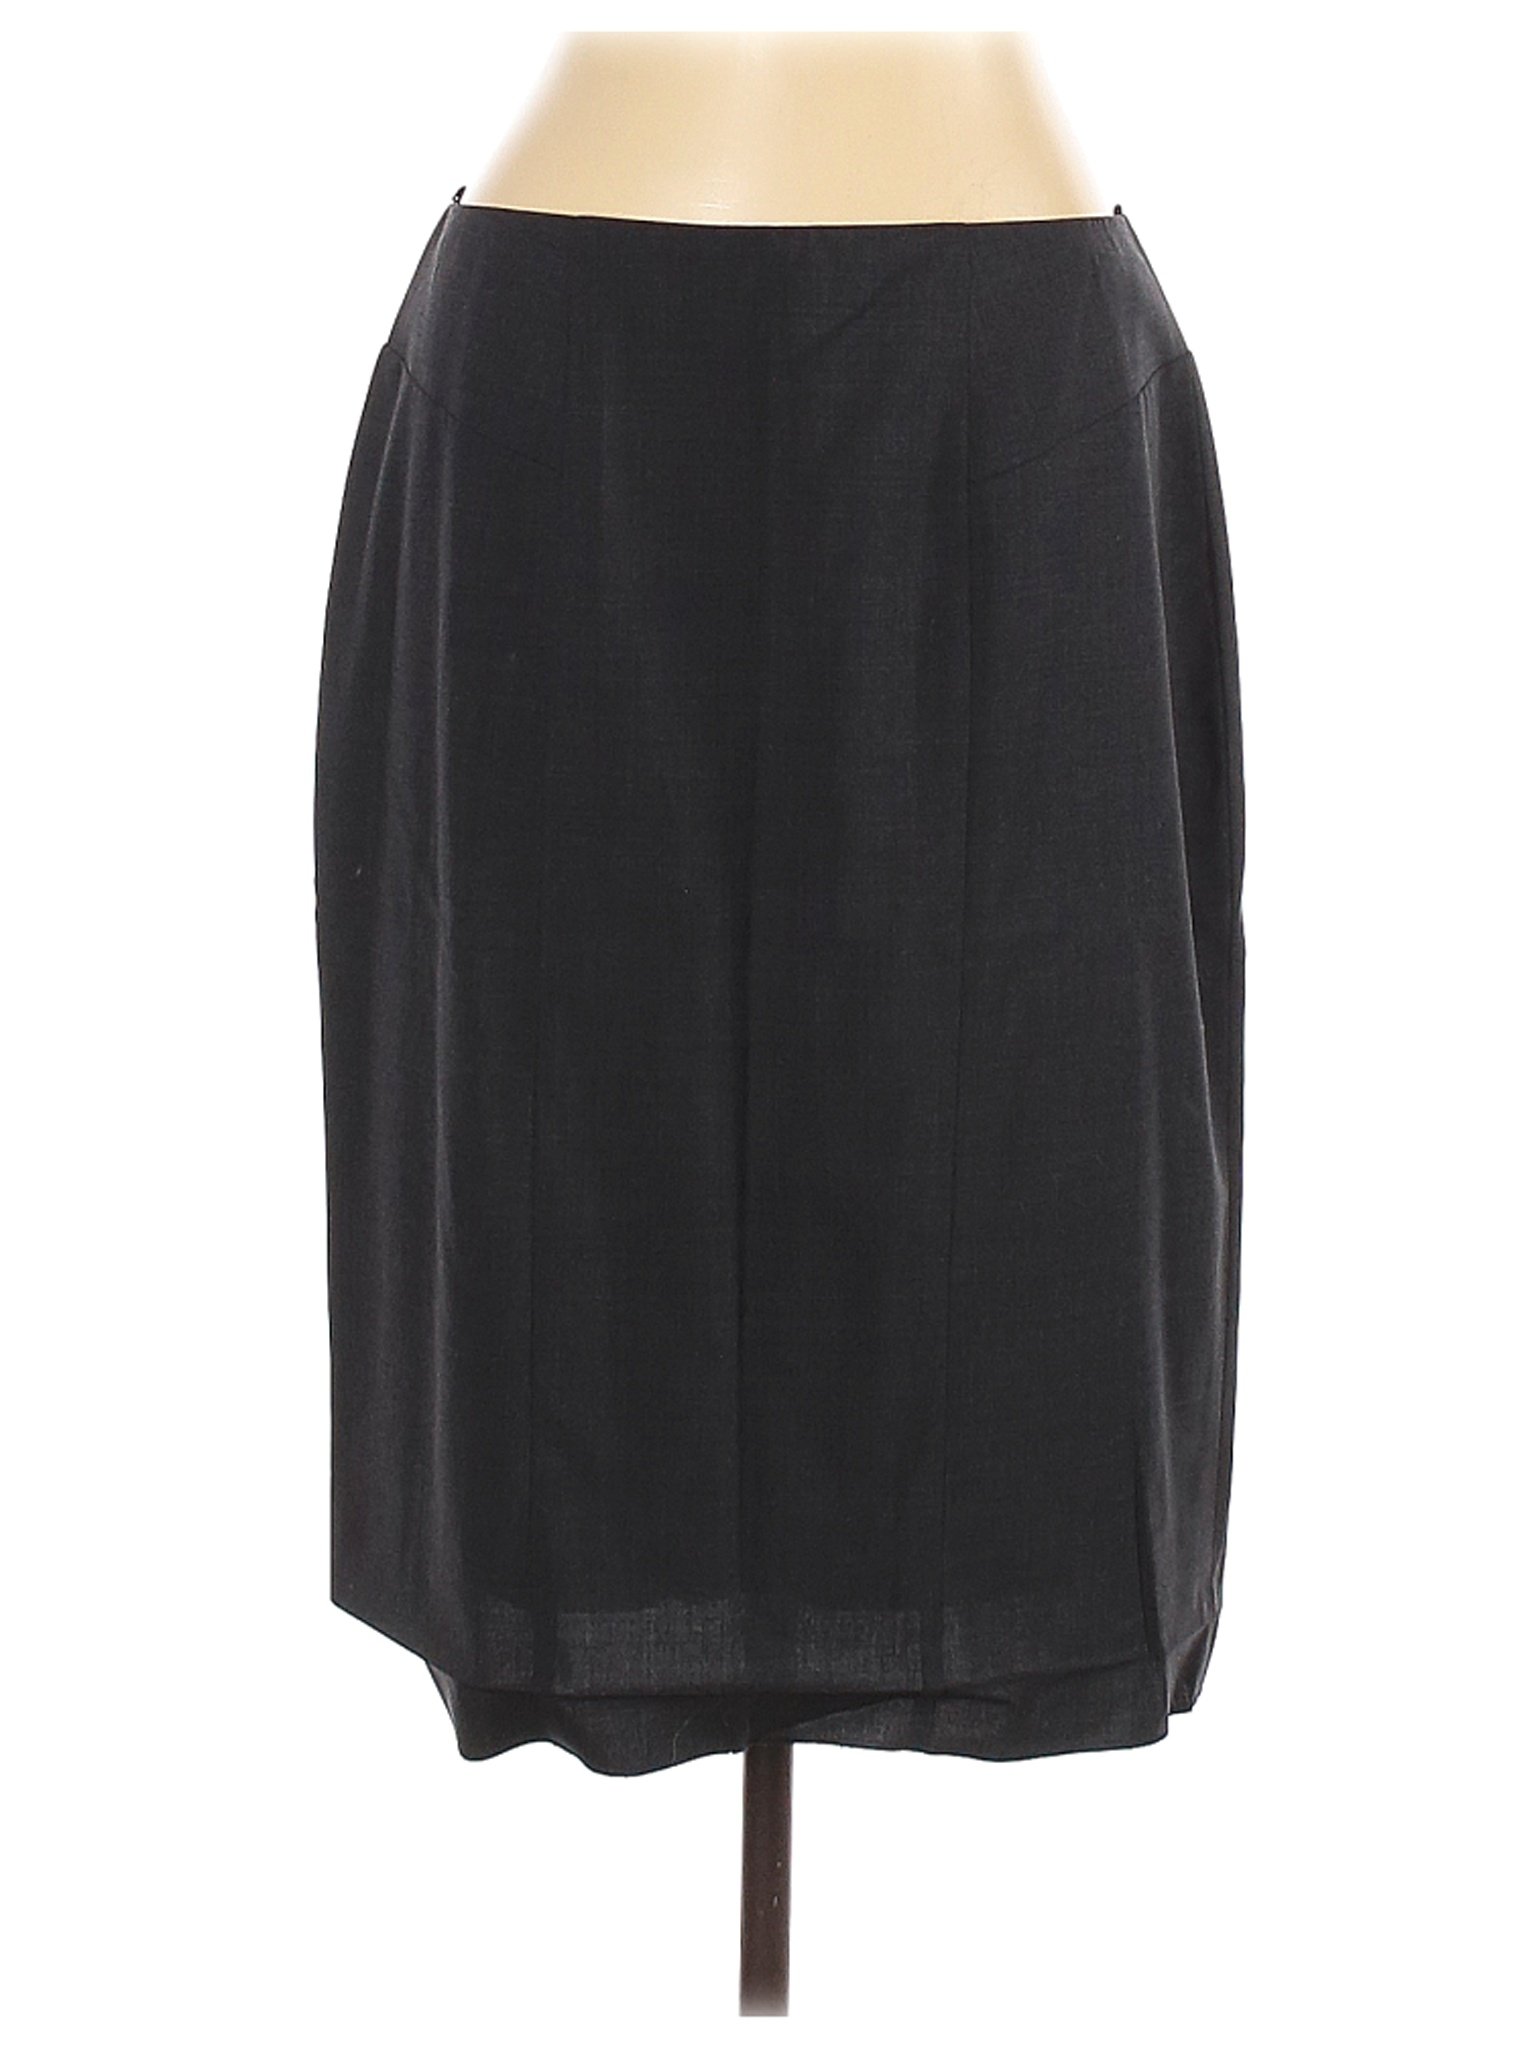 BOSS by HUGO BOSS Women Black Wool Skirt 10 | eBay